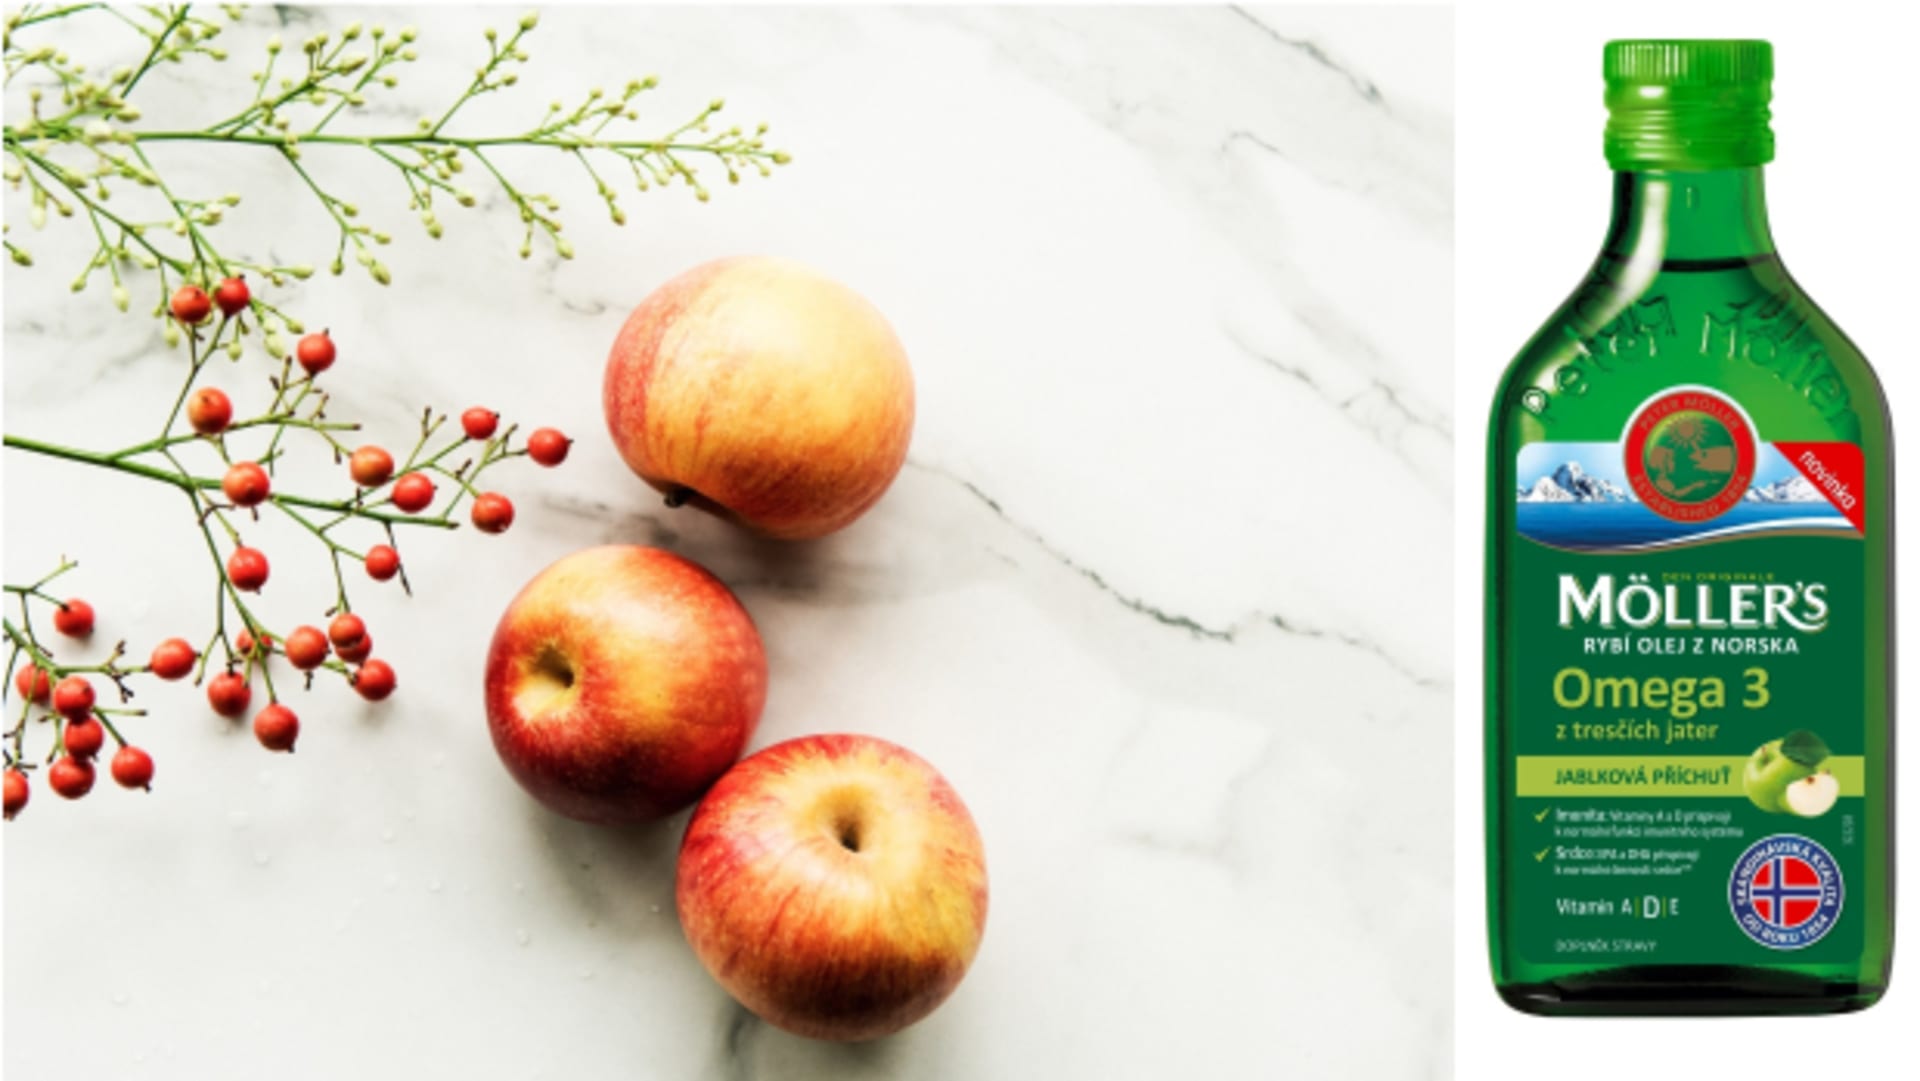 Věhlasný rybí olej Möller’s z Norska s novou příchutí jablka obsahuje velké množství omega 3 mastných kyselin a je také skvělým zdrojem vitaminů A, D a E, proto je jedním z nejlepších způsobů, jak posílit imunitní systém.